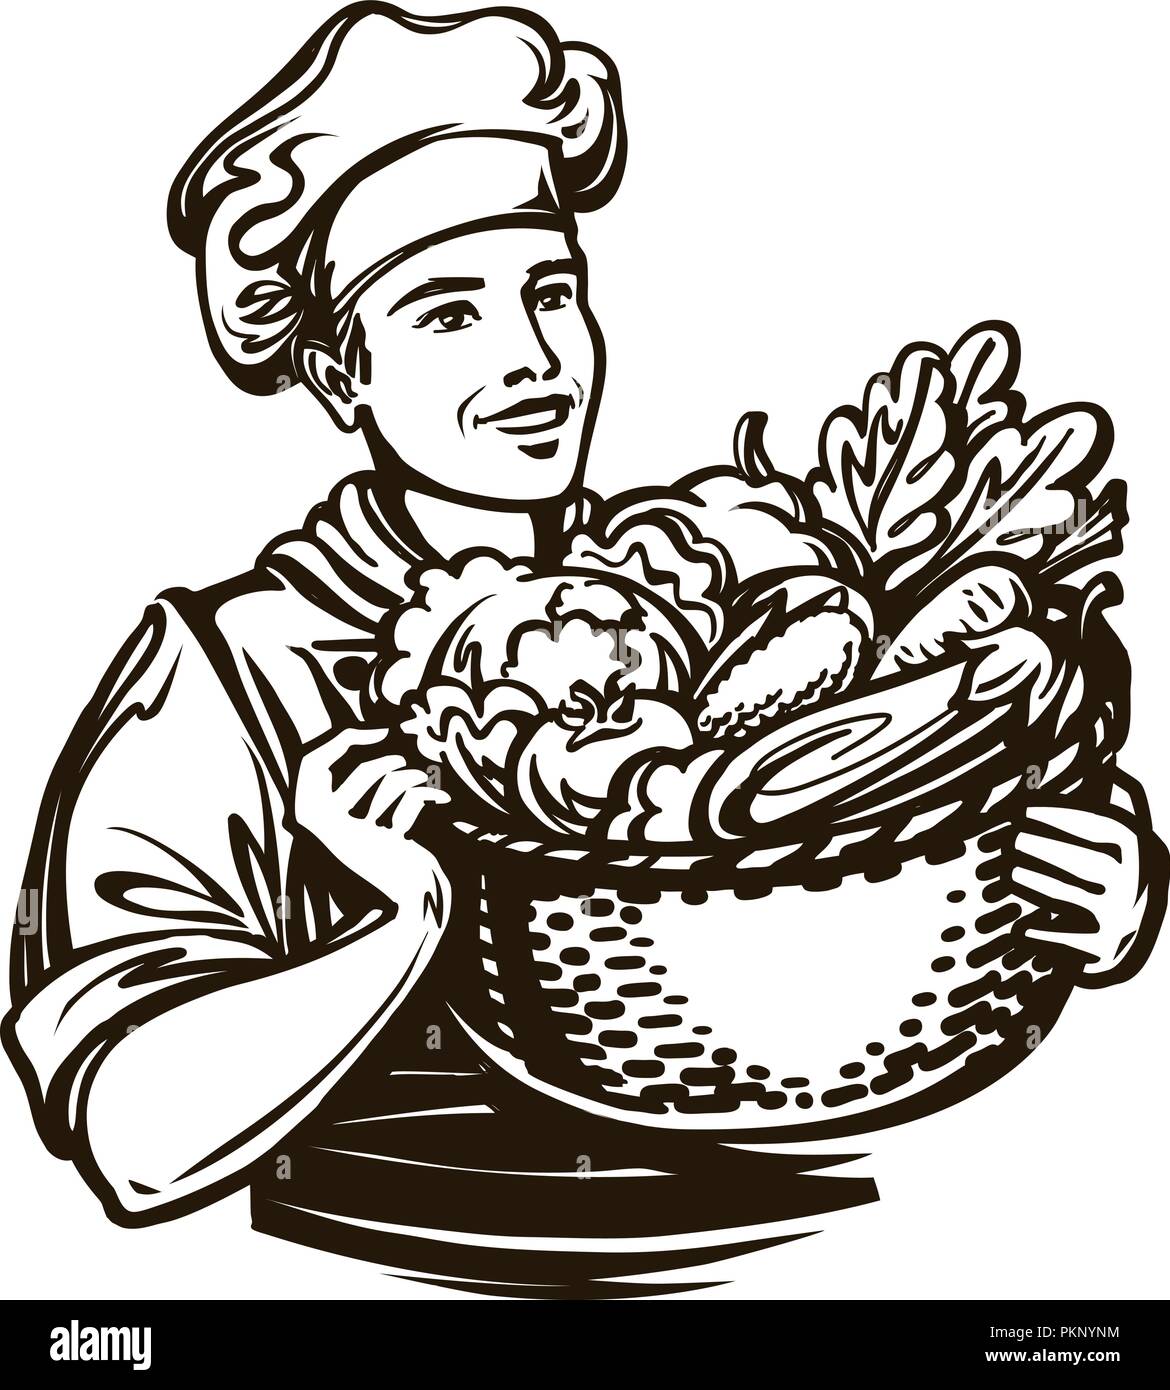 Cuocere con una cesta piena di verdure fresche. Cucina, cucina, cibo sano concetto. Schizzo vintage, illustrazione vettoriale Illustrazione Vettoriale